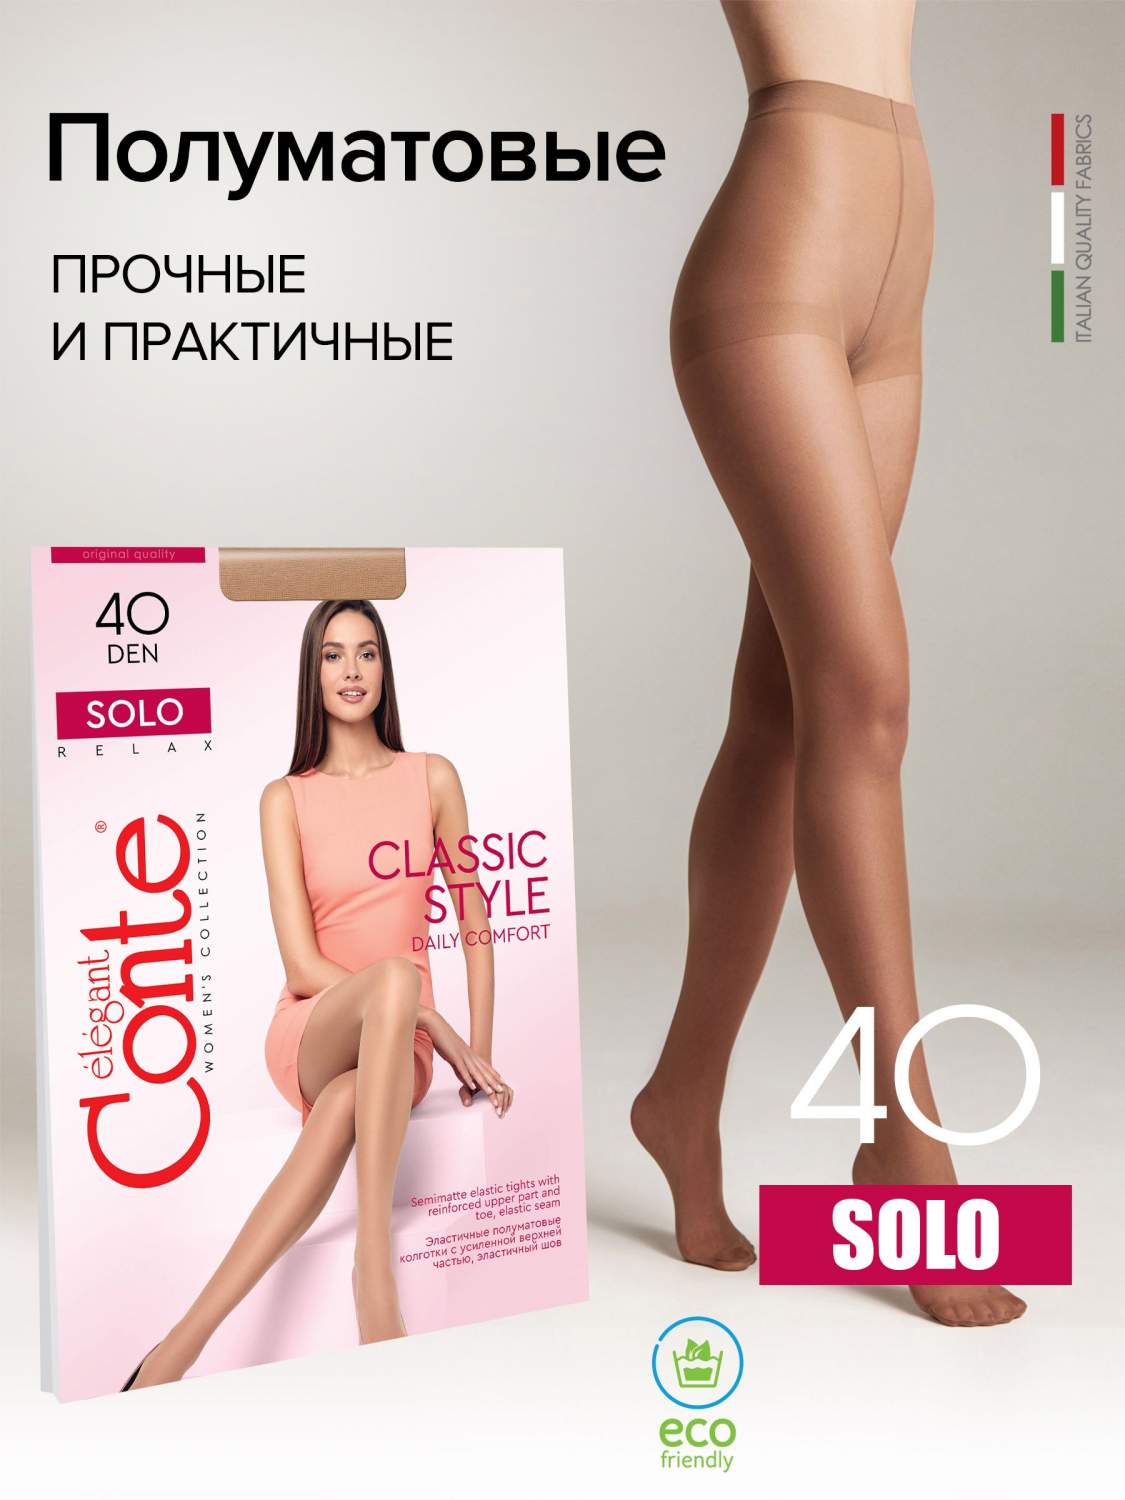 Колготки женские Conte Solo бронзовые 6 - отзывы покупателей на Мегамаркет  | женские колготки 4810226014219